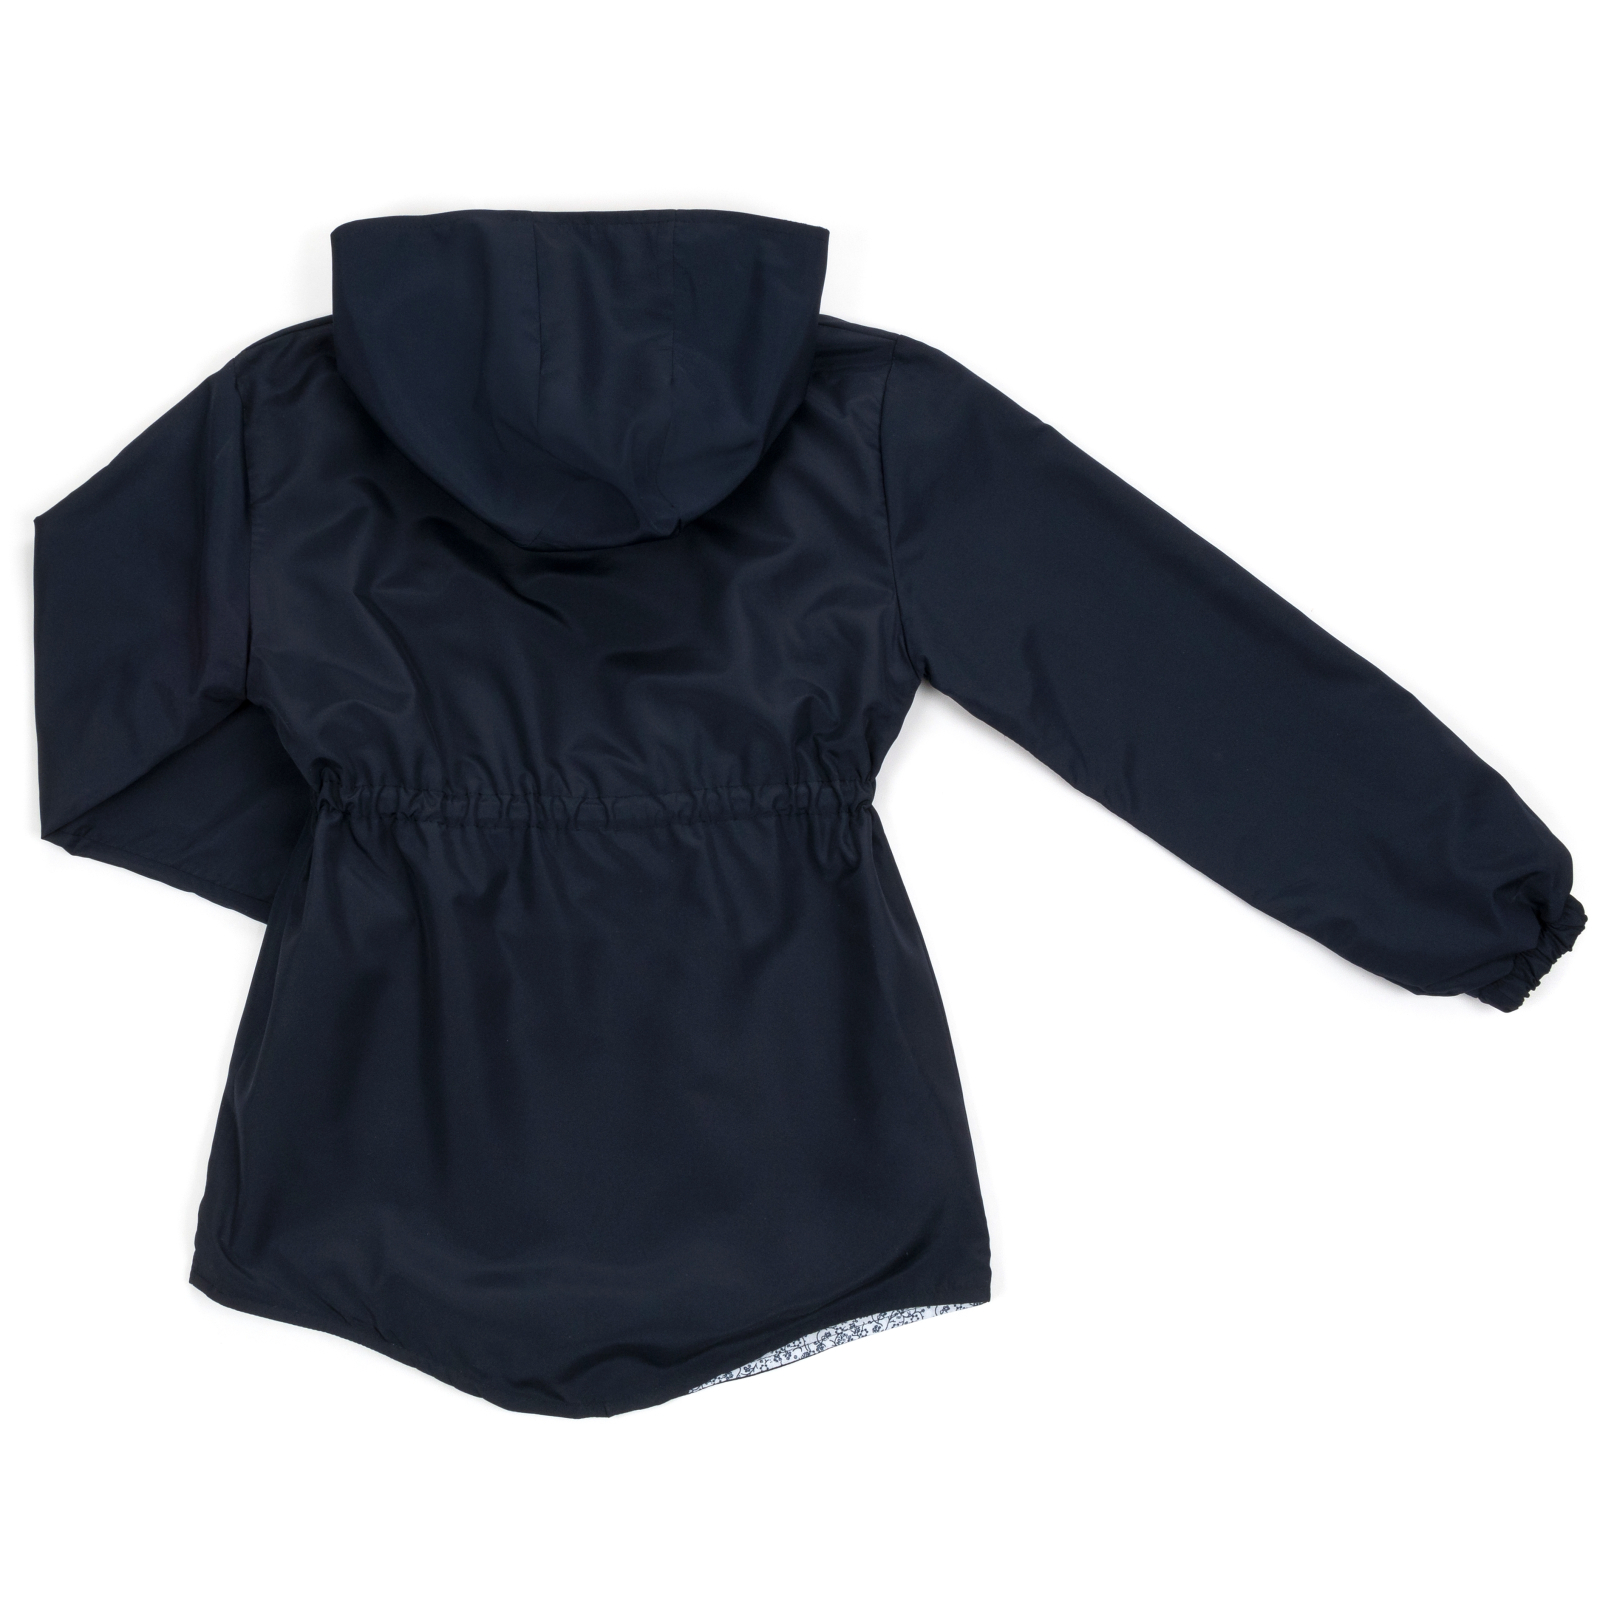 Куртка Haknur ветровка с капюшоном (7855-152G-blue) изображение 2